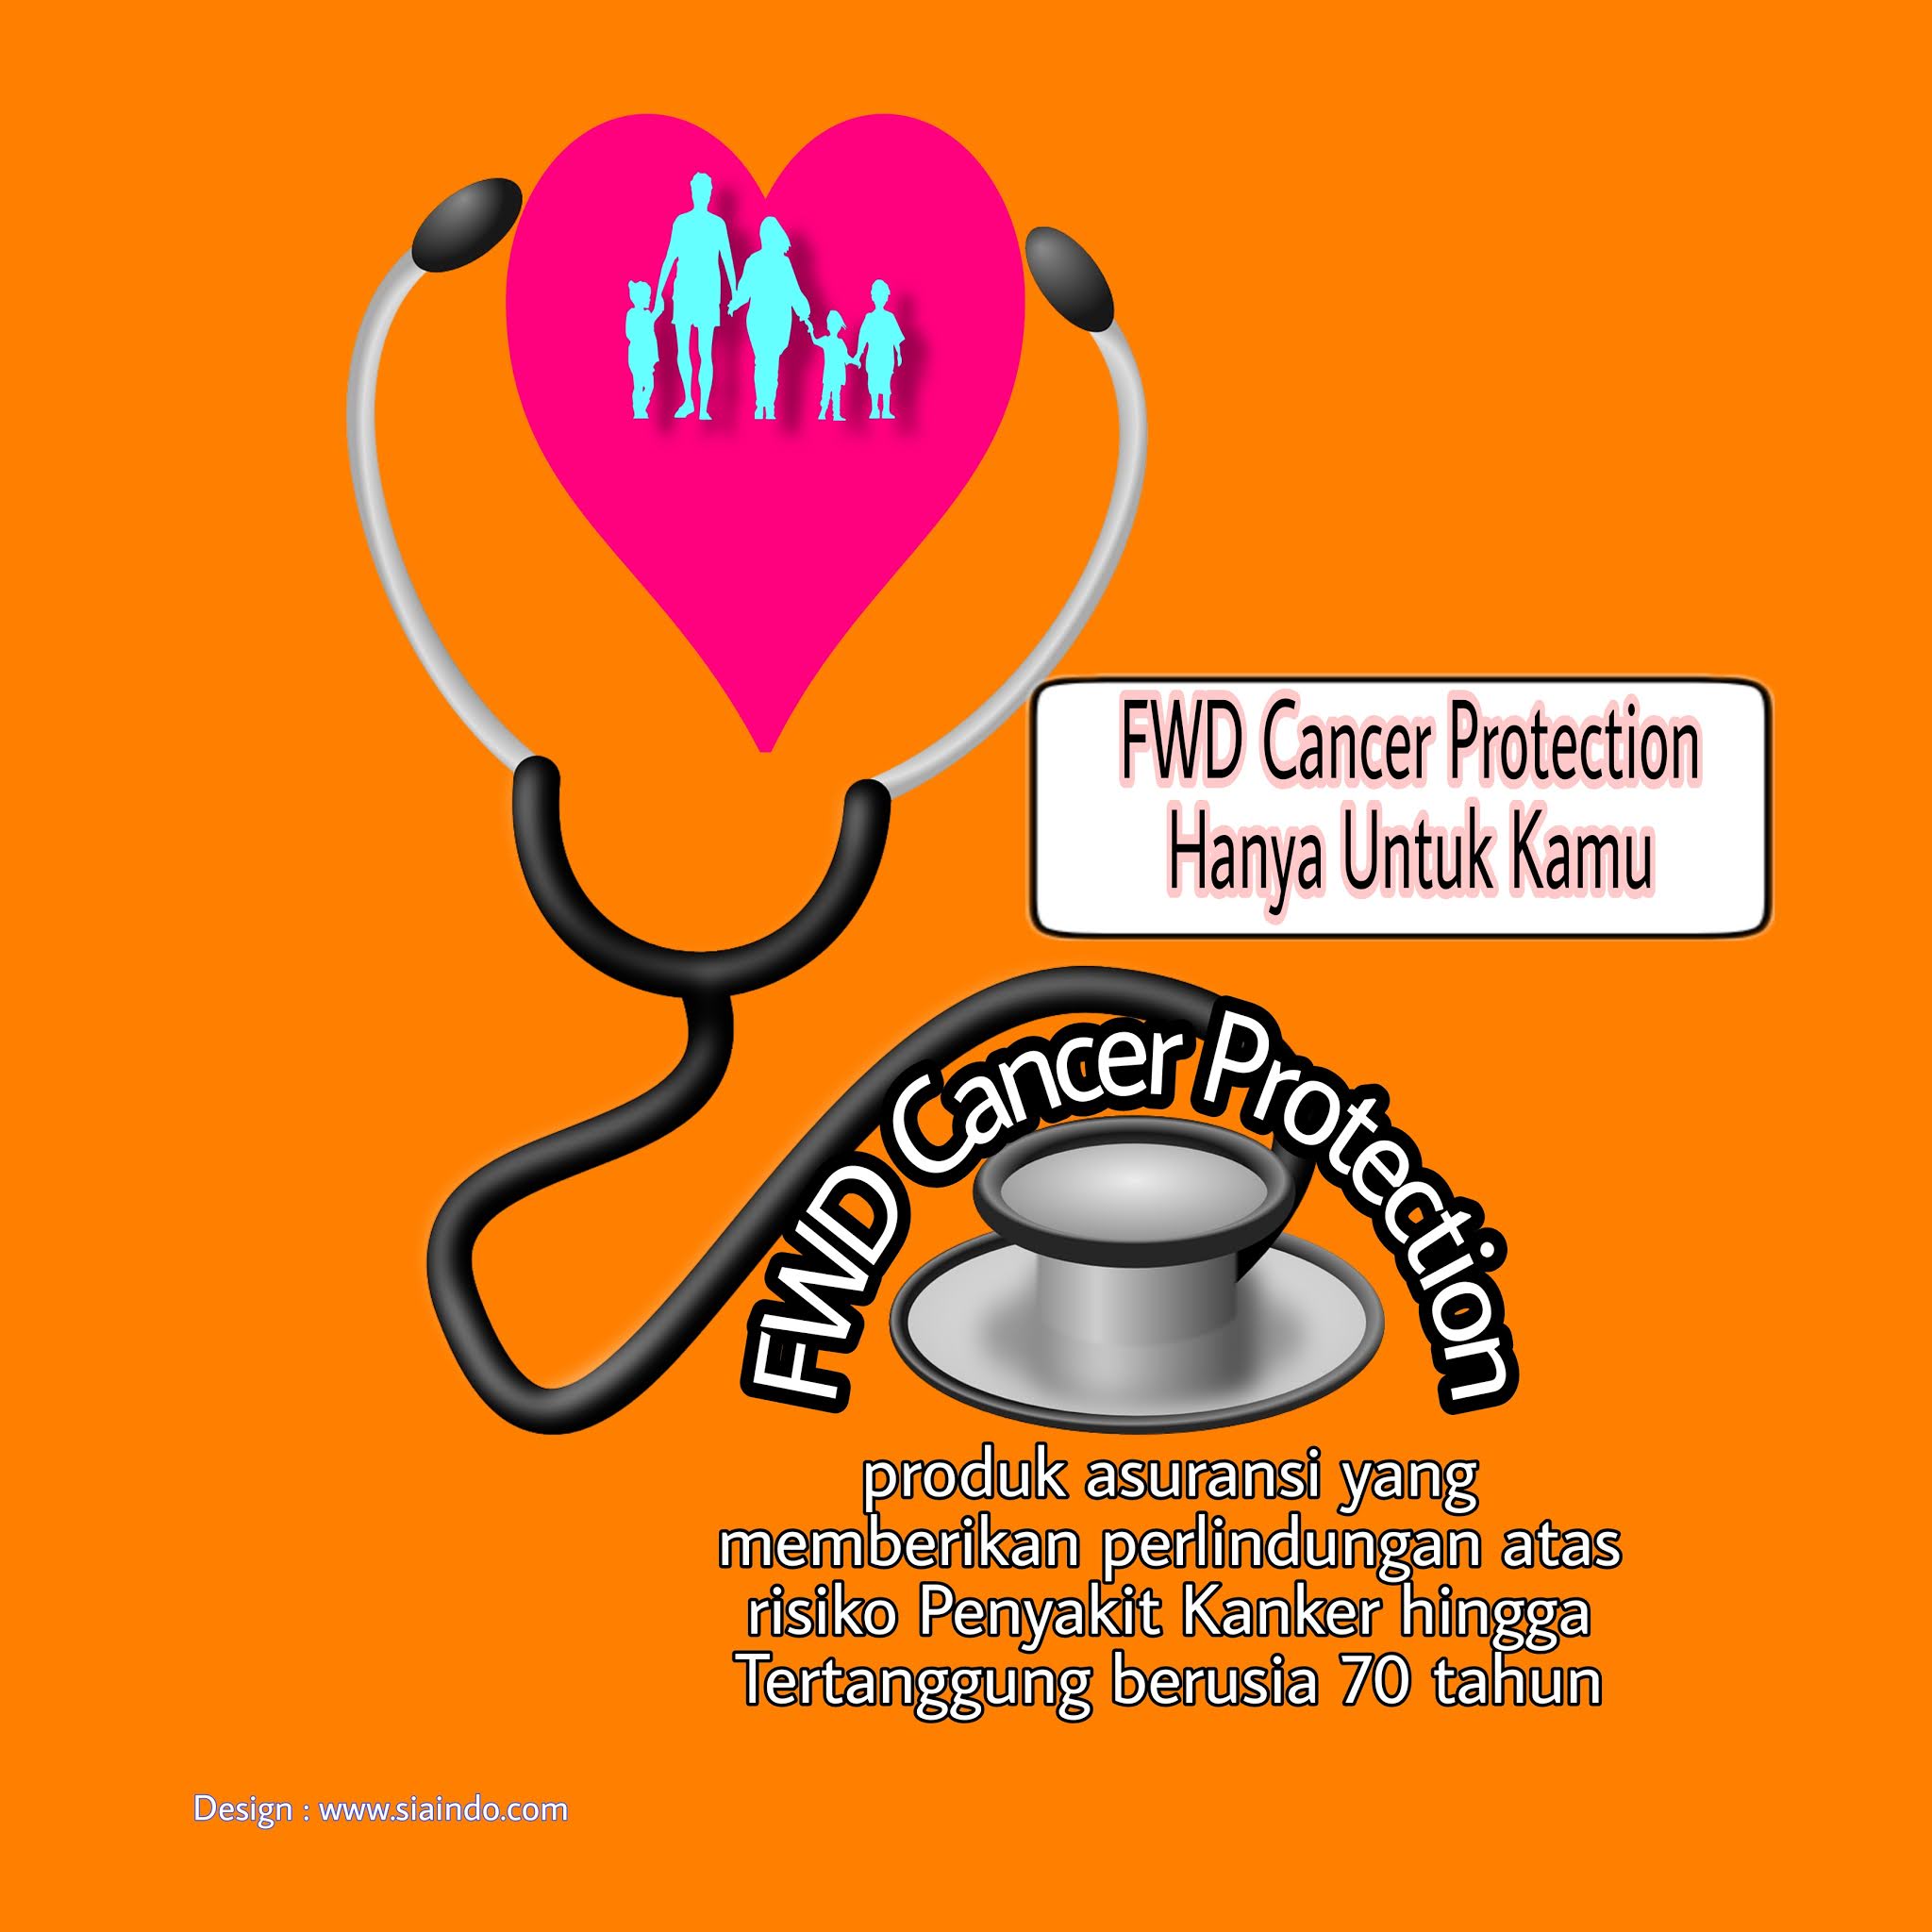 Proteksi Diri dengan FWD Cancer Protection asuransi